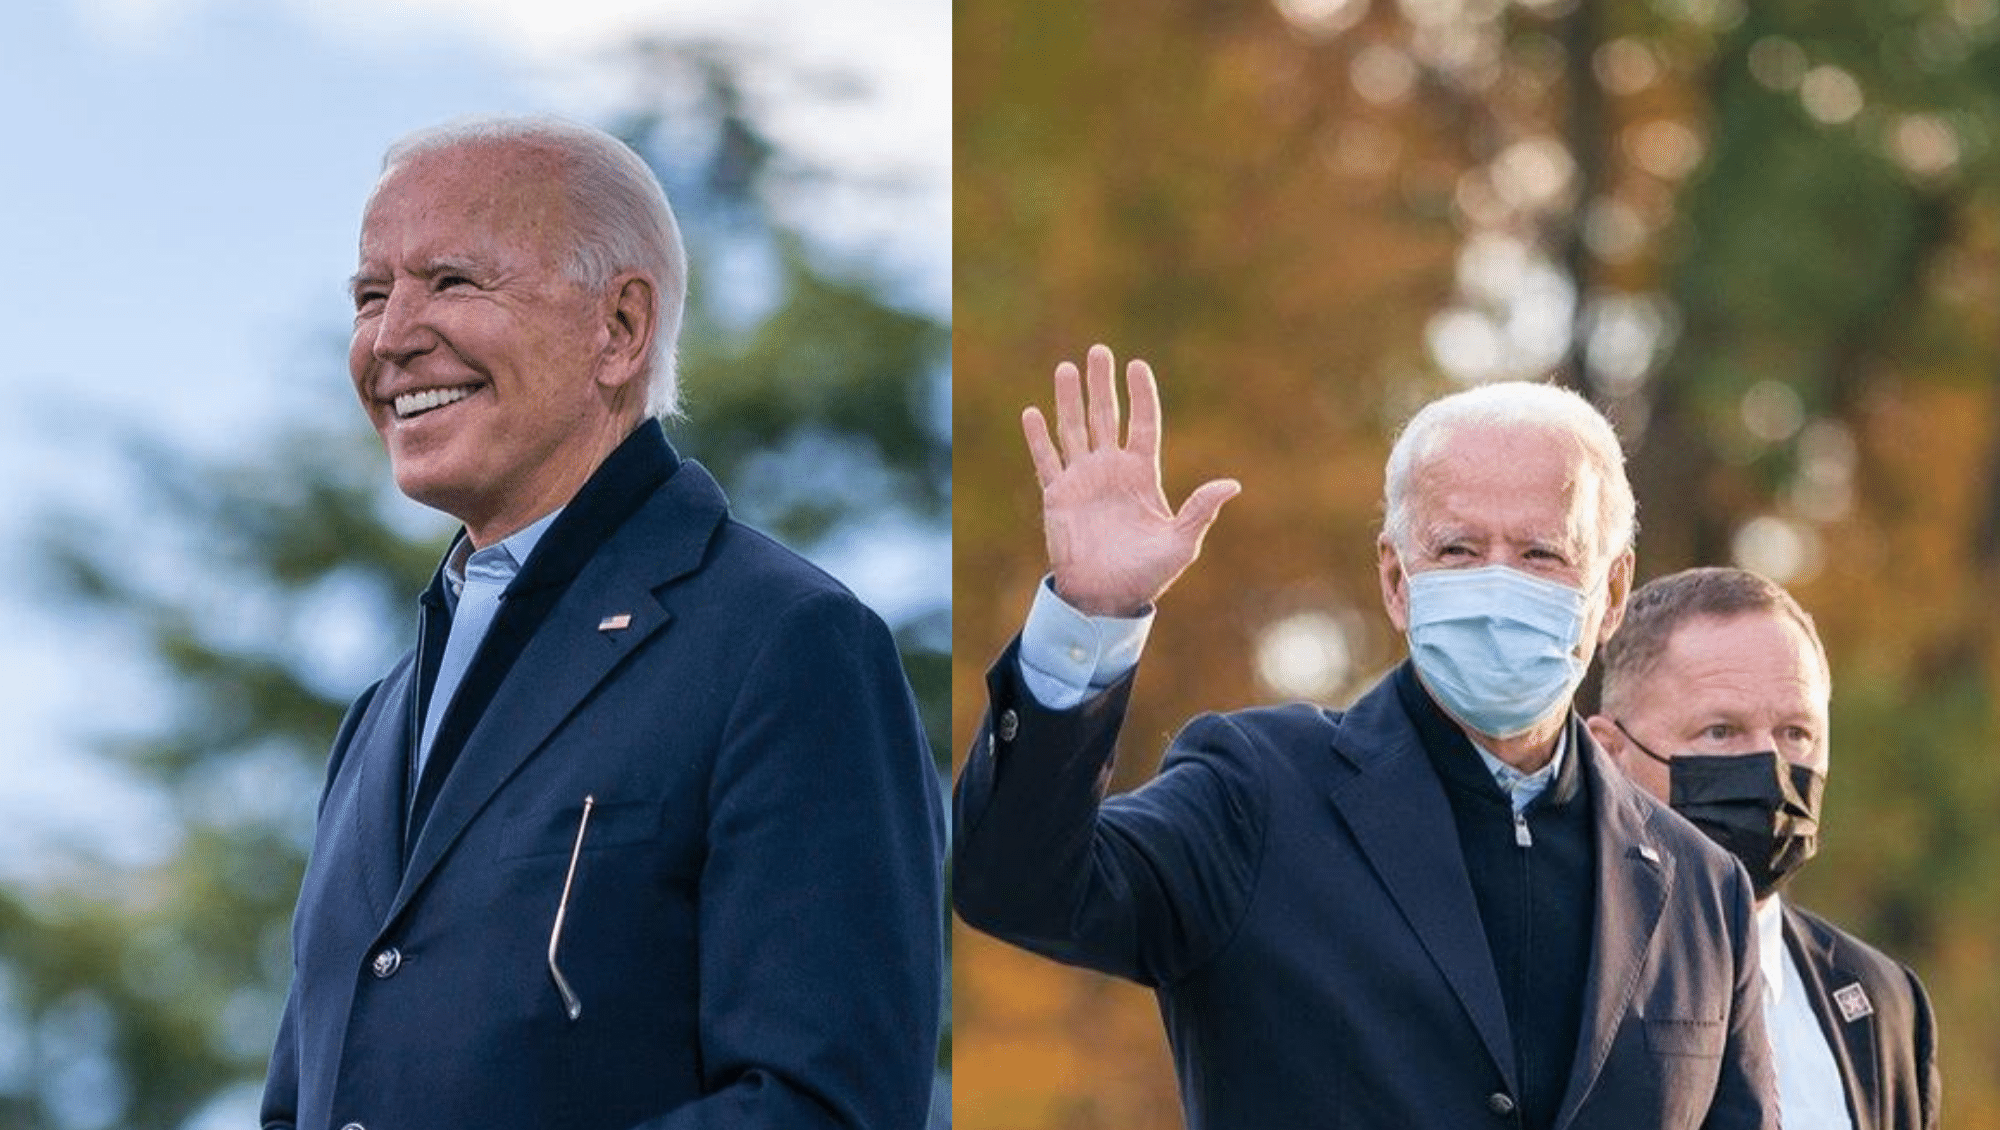 Joe Biden chi è il candidato alle elezioni USA 2020